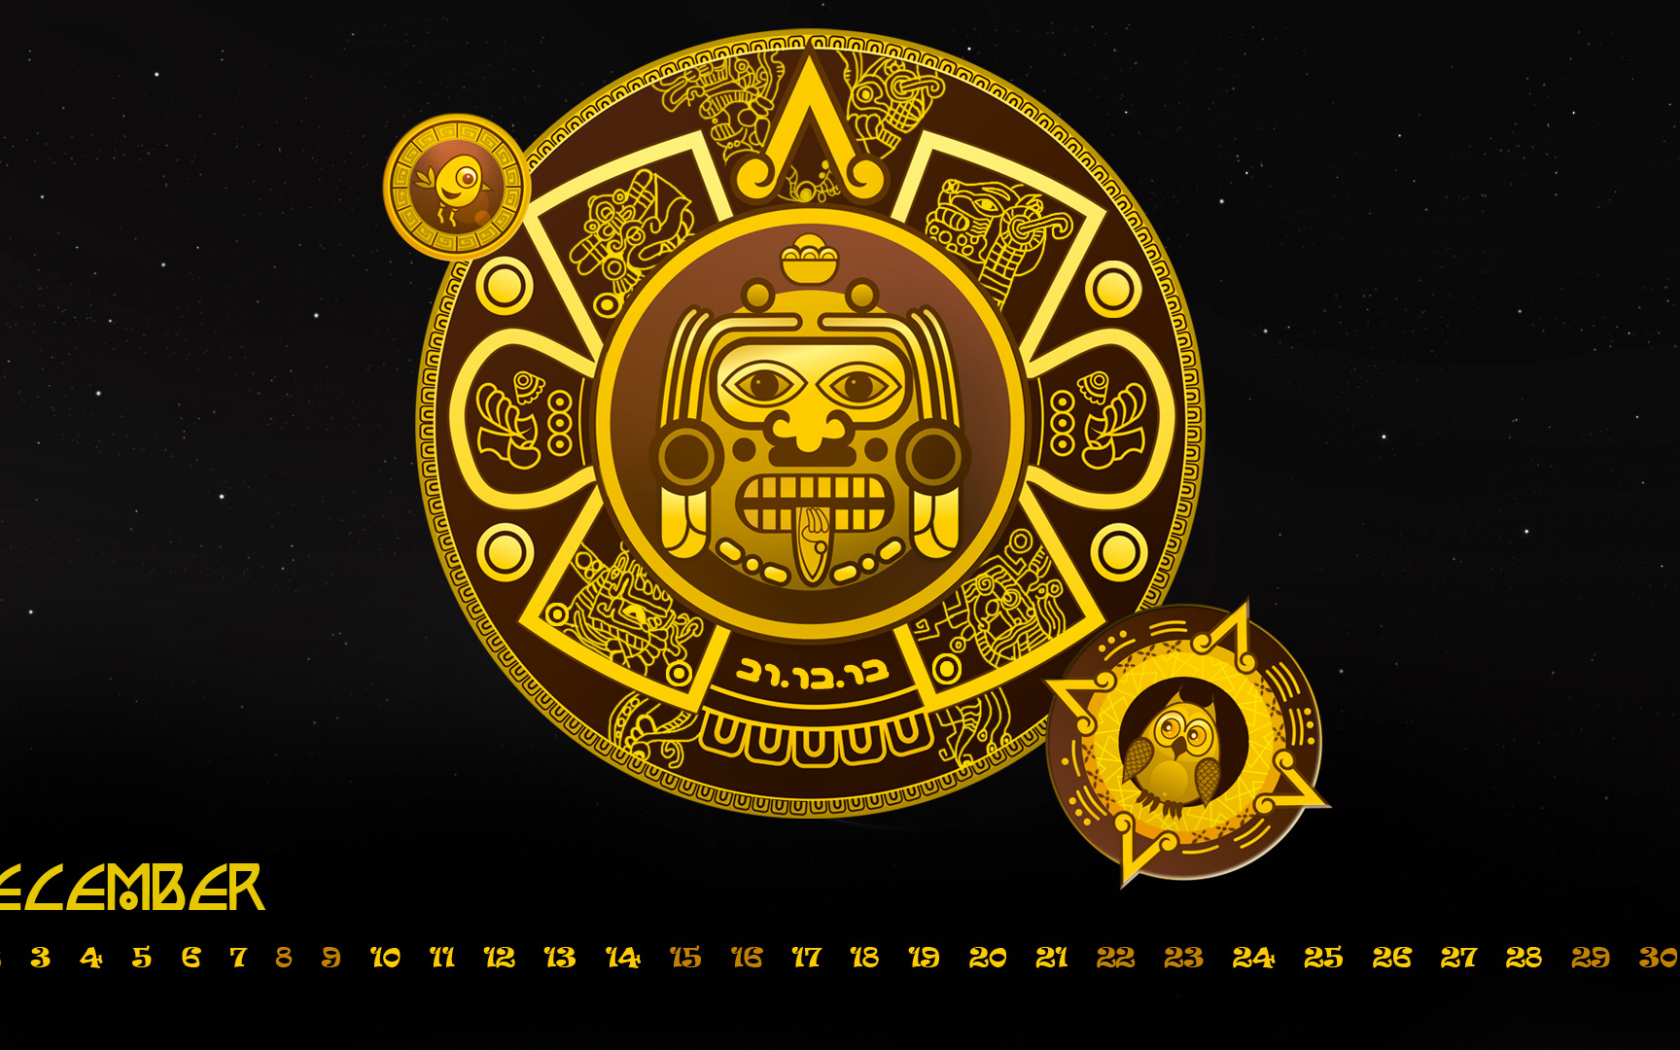 декабрь, december, календарь, конец света, майя, шуточный